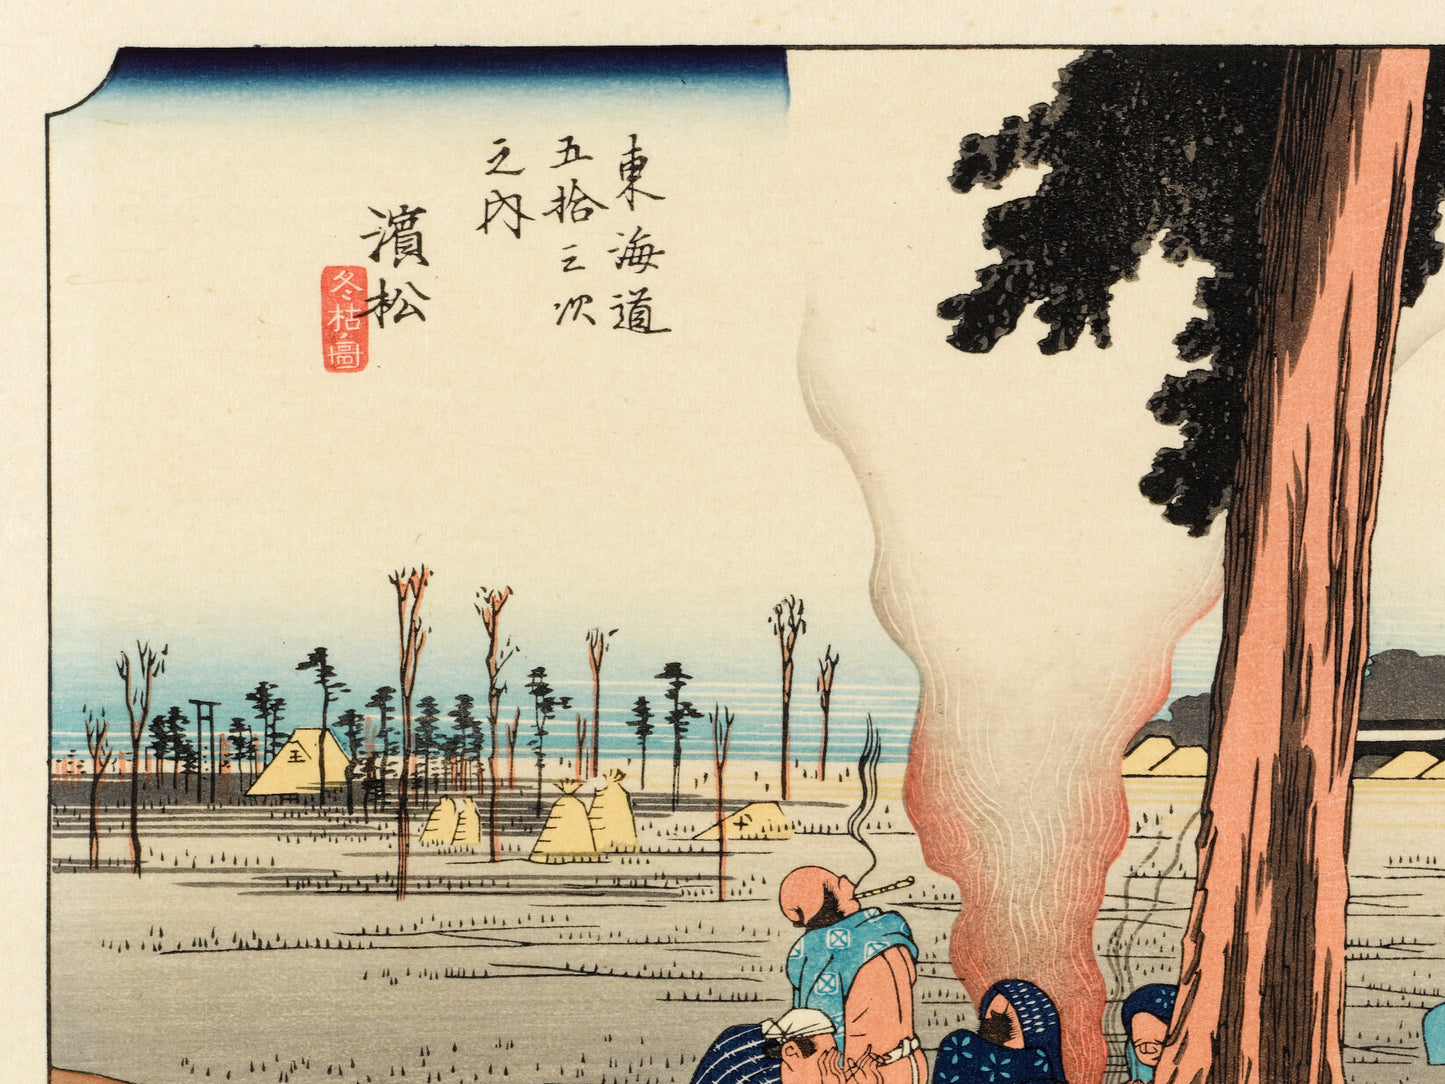 estampe japonaise de hiroshige grand tokaido des voyageurs font halte sous un pin, texte calligraphié et la mer au loin